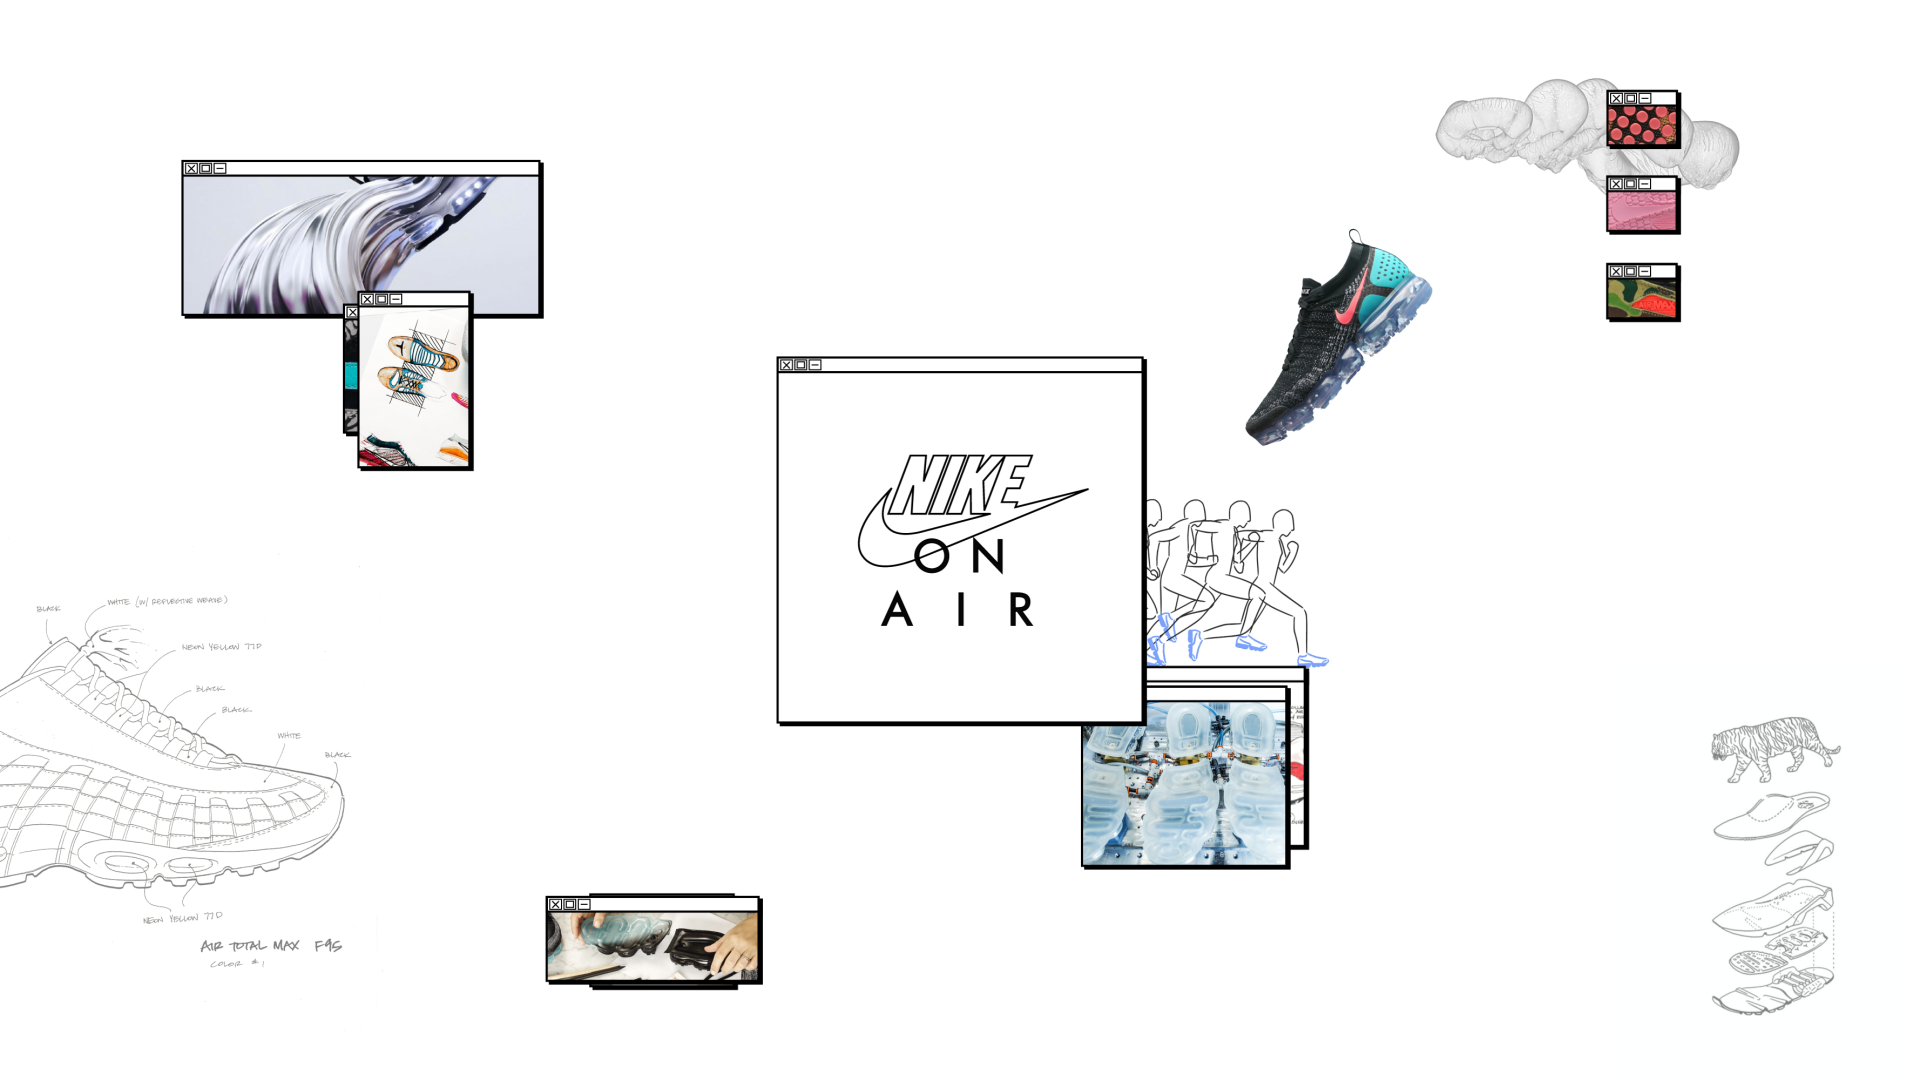 #狂想不羁，创变不止# Nike "上海: ON AIR" 设计大赛即将开启一场速度加持的设计狂想